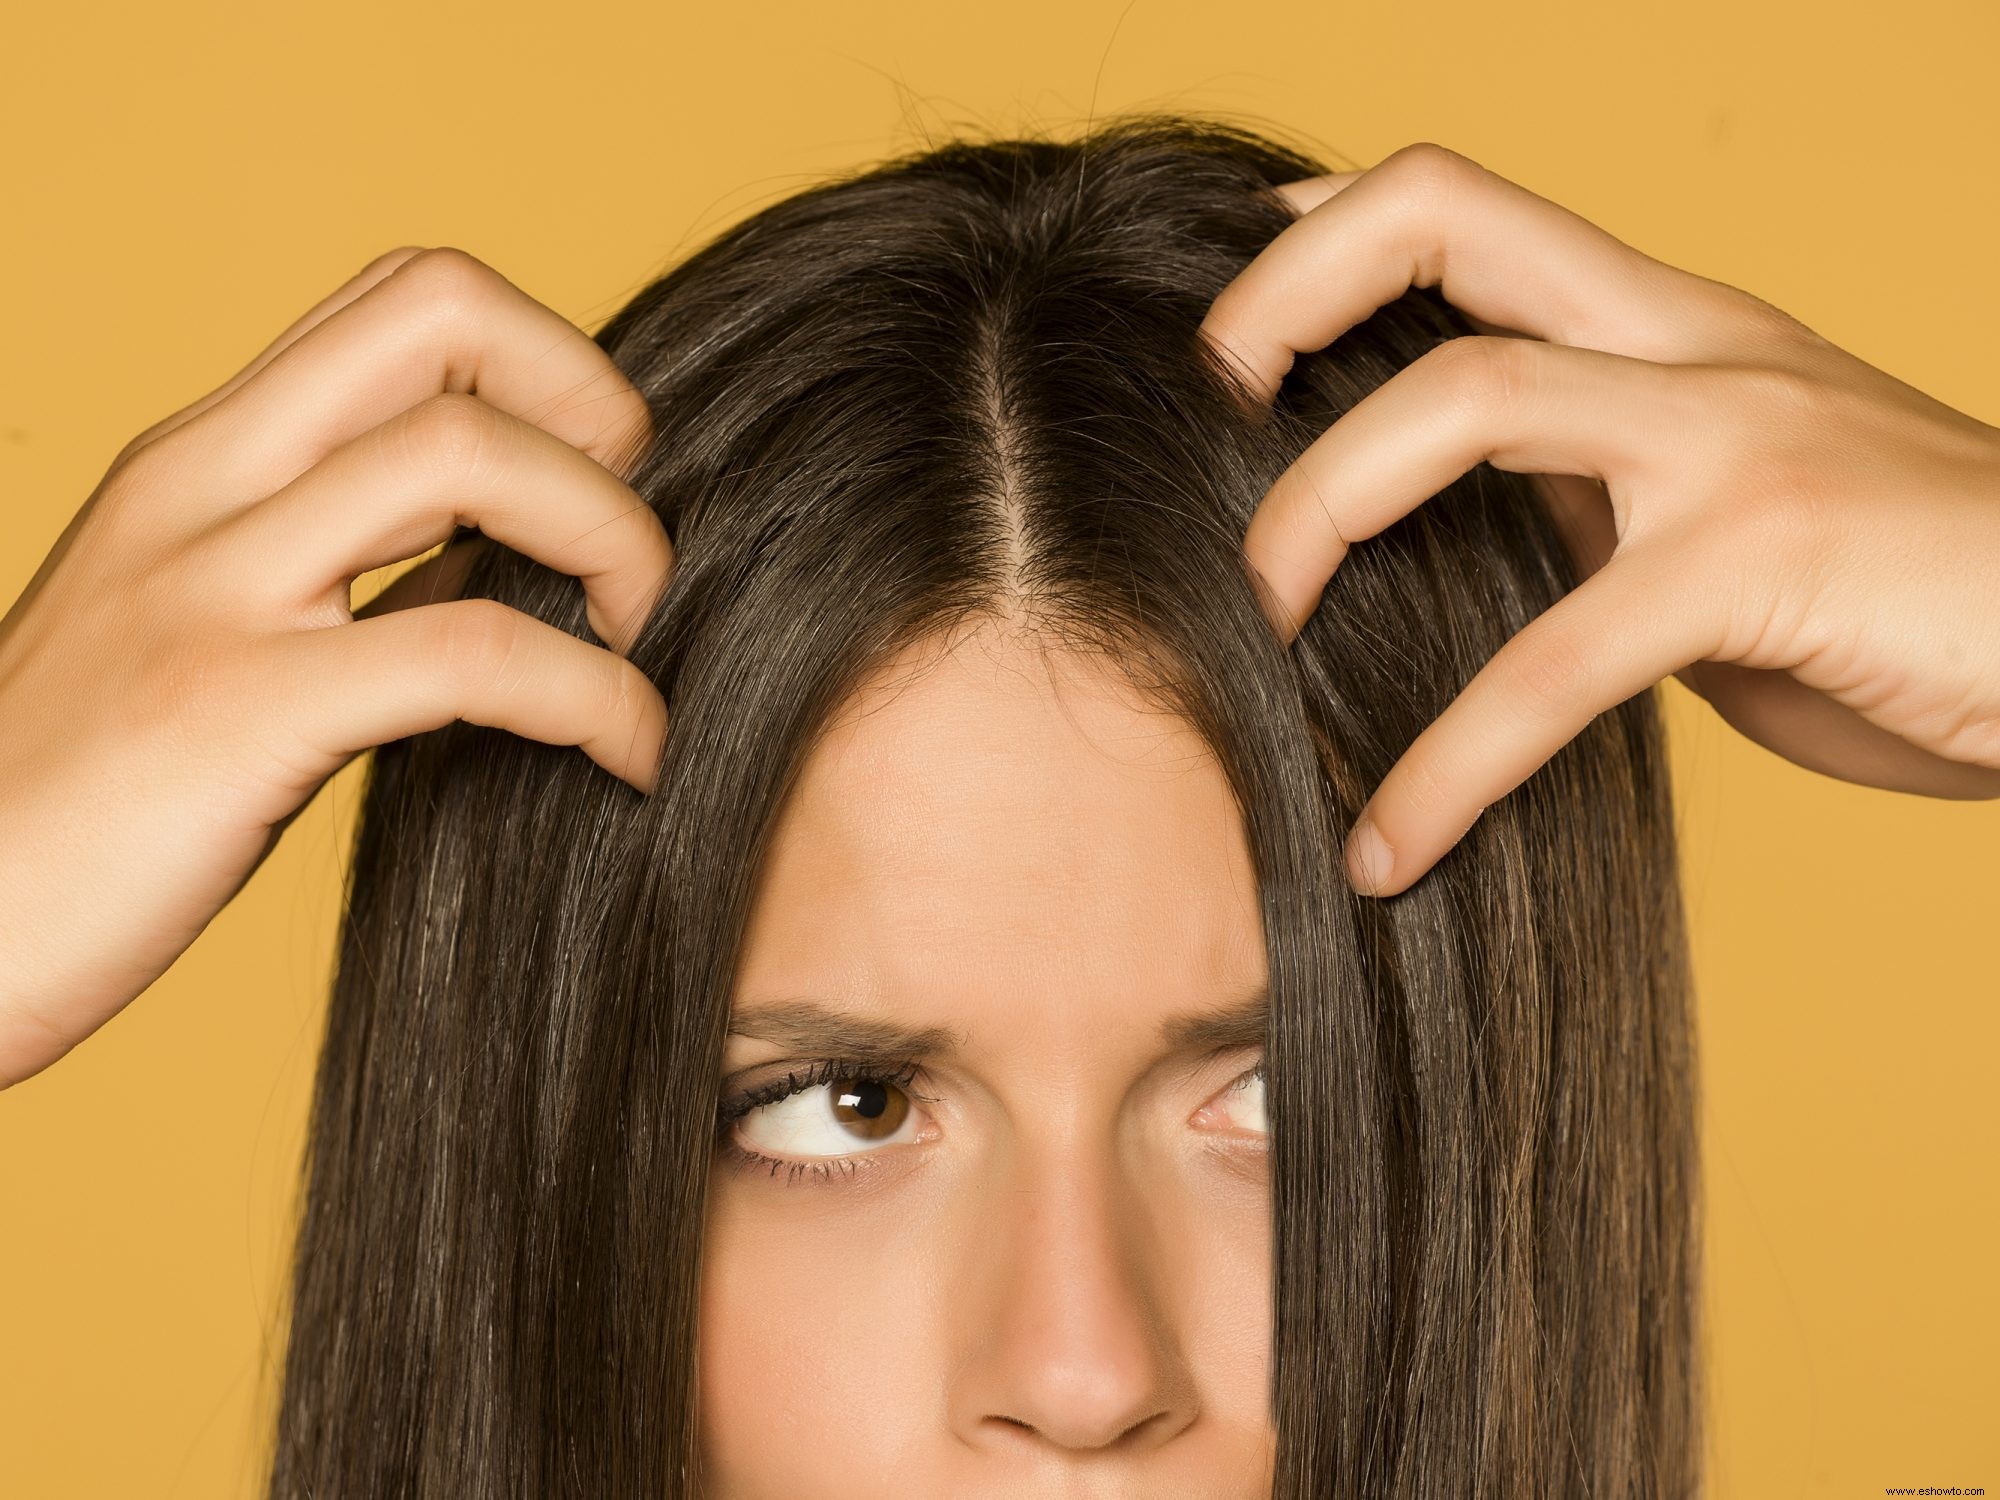 Por qué deberías exfoliar tu cuero cabelludo, según los expertos 